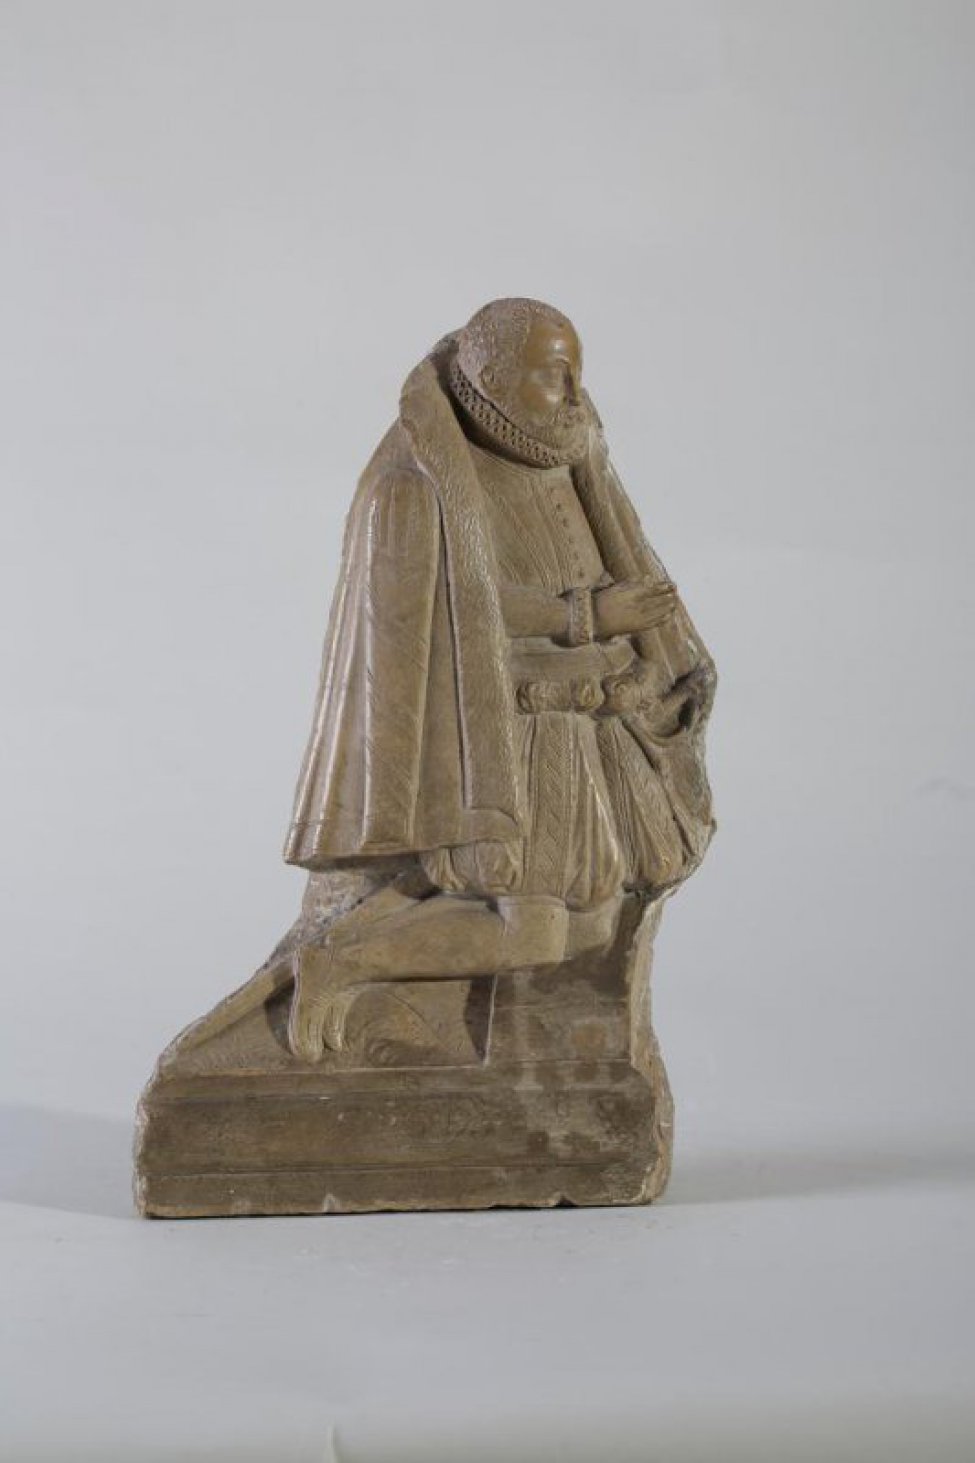 Изображена коленопреклоненная фигура молящегося мужчины, на каменных ступенях. Мужчина изображен в правый профиль. Руки сложены вместе и подняты для молитвы. На плечах накидка.